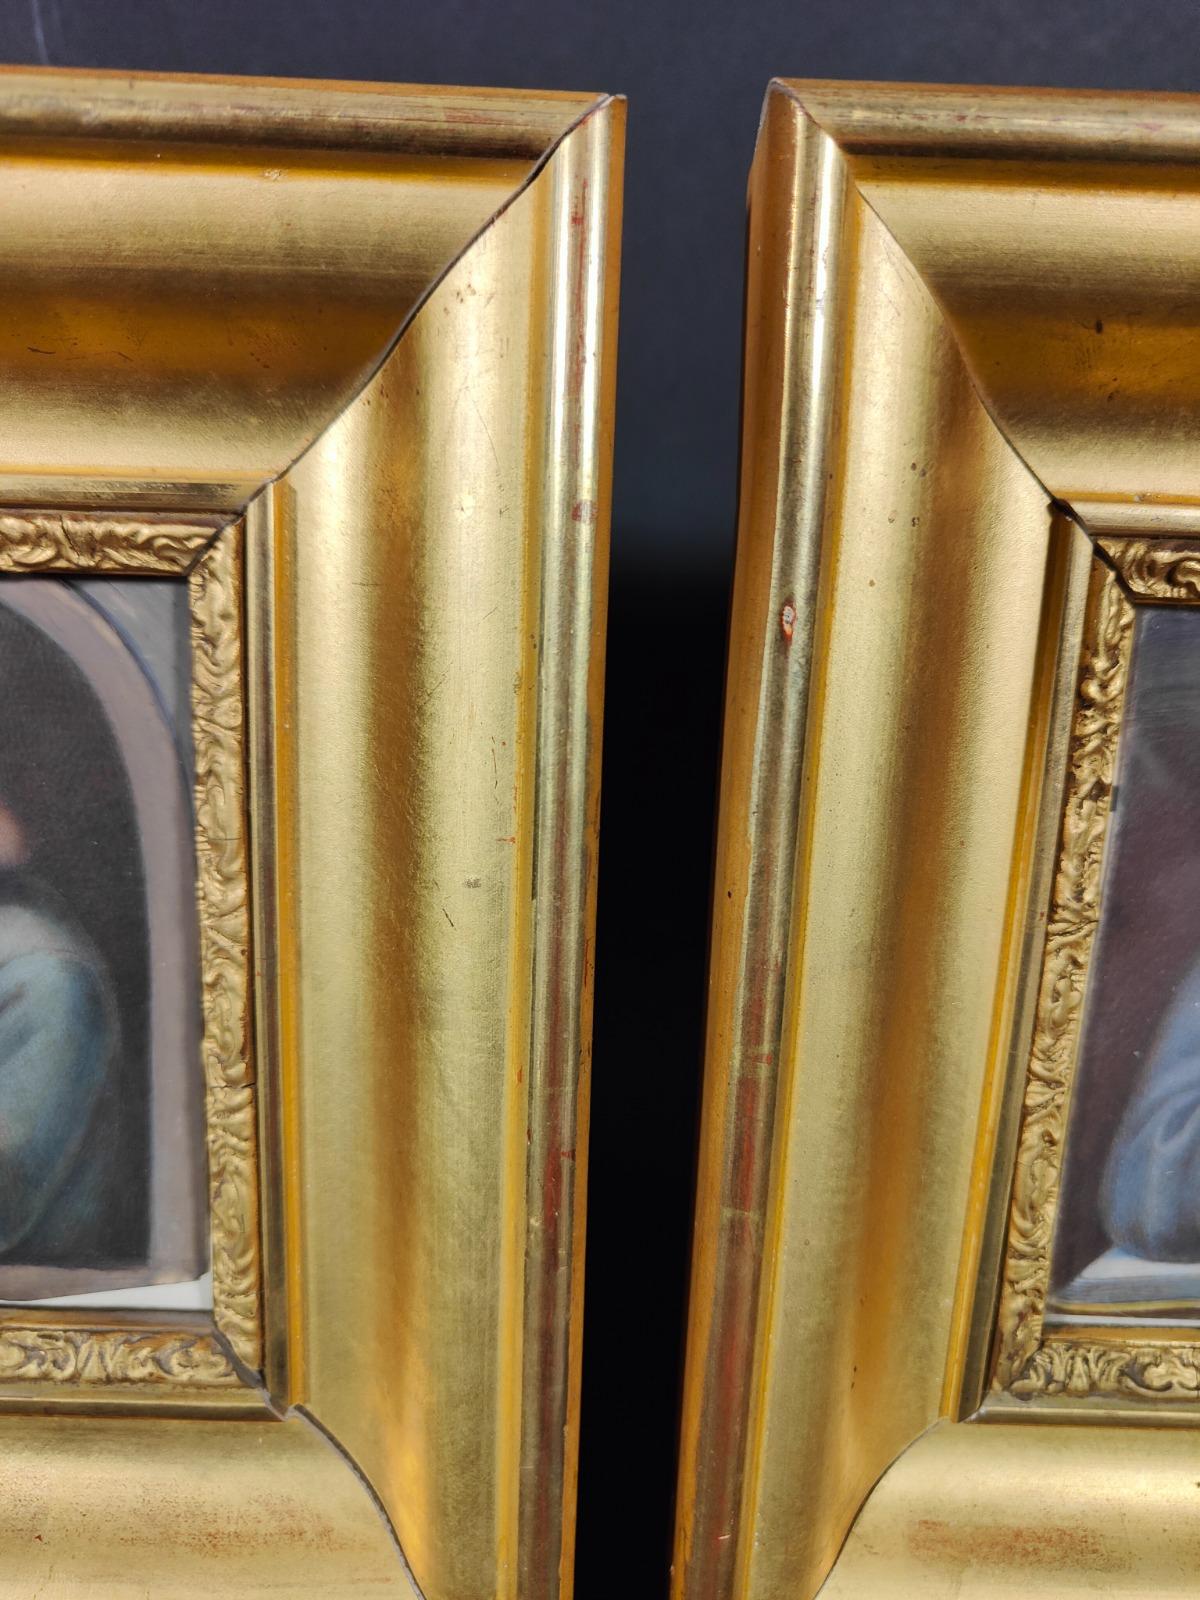 Zwei Porträts auf Elfenbein. Alte renascentistische Porträts auf Elfenbeinplatte mit goldenem Holzrahmen. Jedes Maß: 21x21 und 11x11 cm.
Guter Zustand.